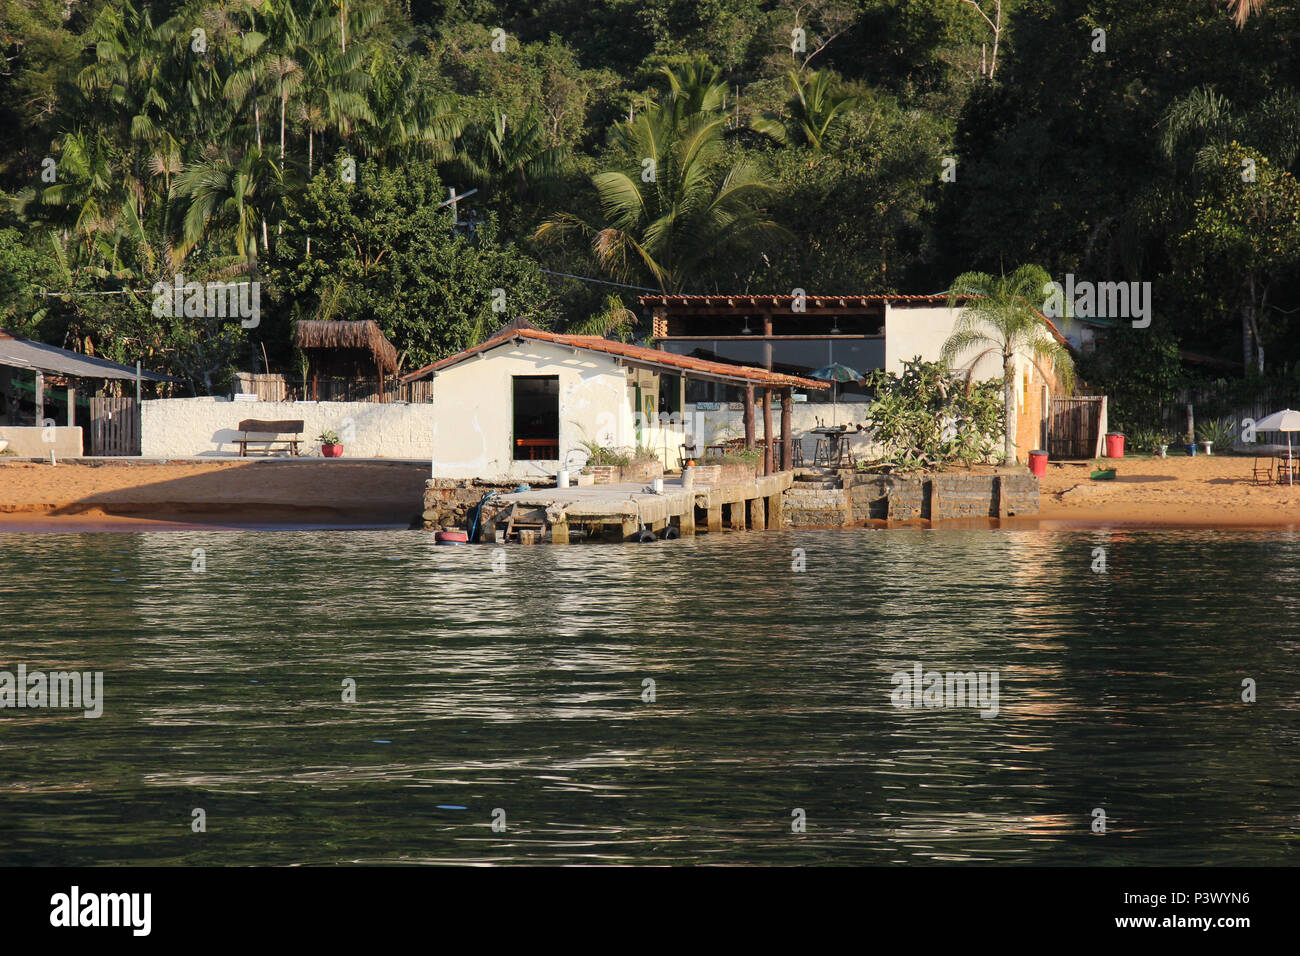 Belezas naturais da enseada de Araçatiba, na Ilha Grande, Angra dos Reis. O local é acessível por barco e fica a aproximadamente 1 hora de navegação partindo do Centro de Angra. Stock Photo